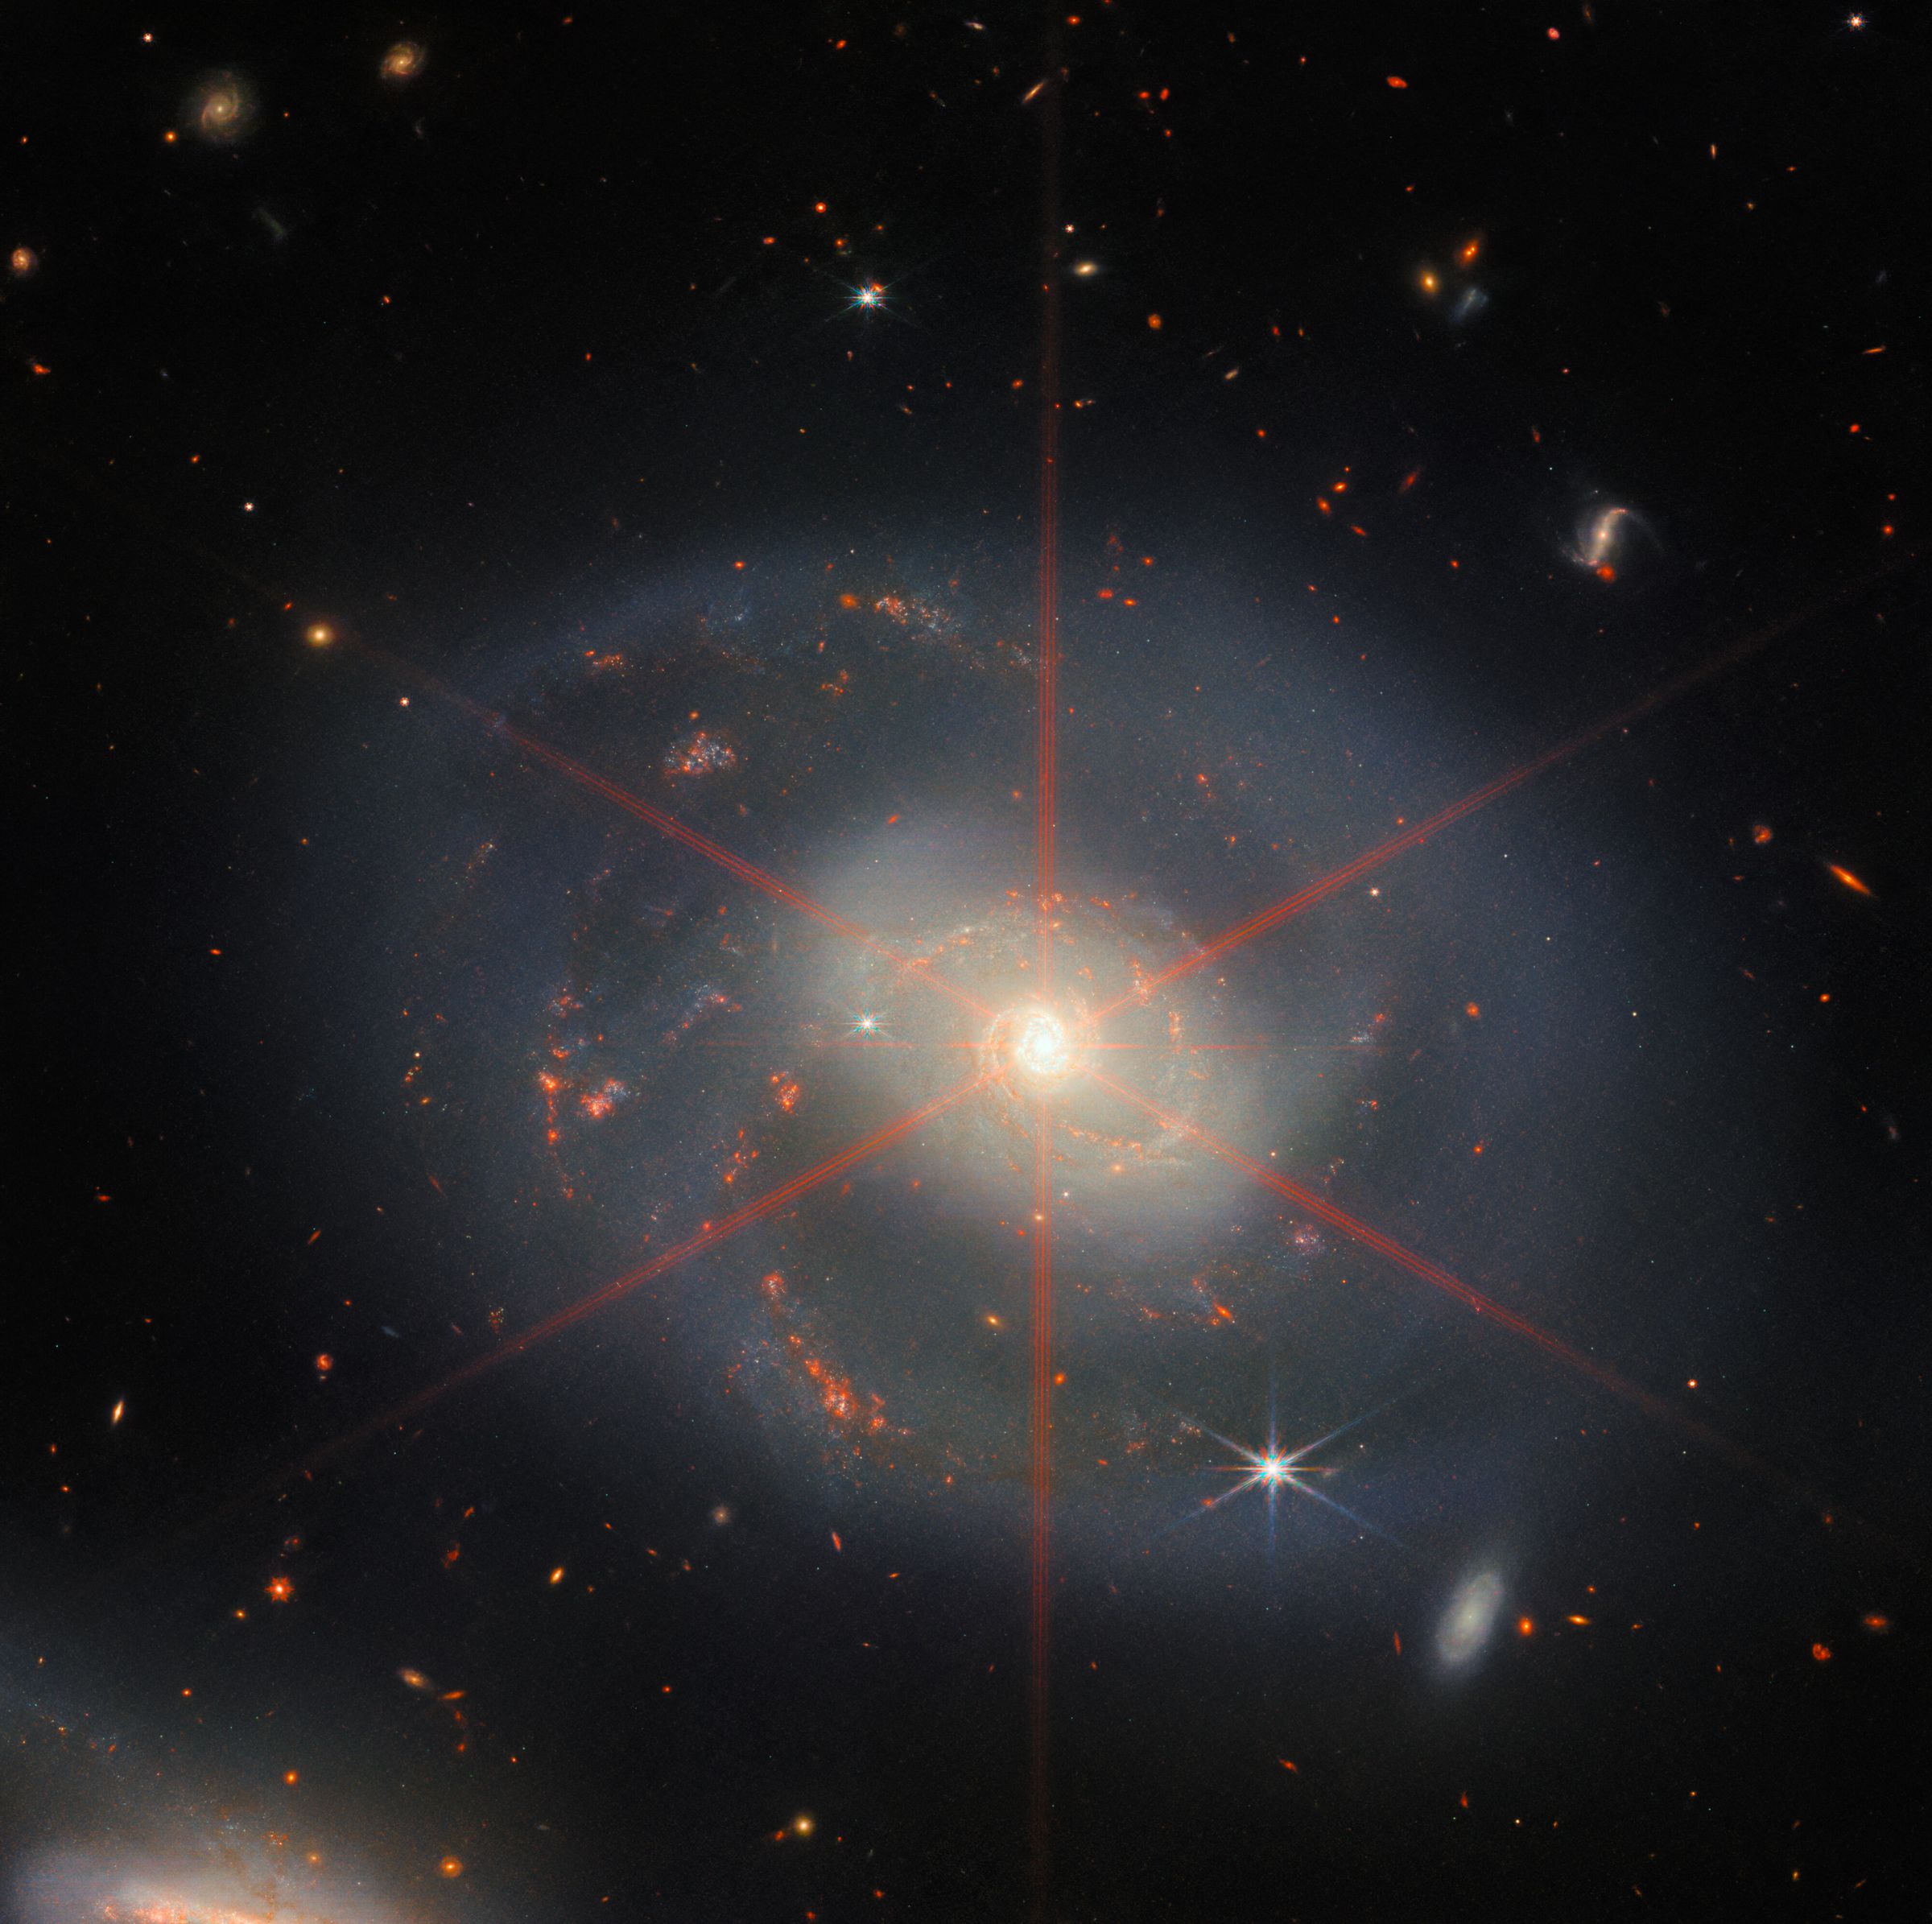 Ta slika prikazuje spiralno galaksijo, v kateri prevladuje svetlo osrednje območje.  Galaksija ima modro-vijolični odtenek z oranžno-rdečimi območji, napolnjenimi z zvezdami.  Vidna je tudi velika difrakcijska konica, ki se pojavi kot zvezdni vzorec nad osrednjim delom galaksije.  Ozadje zapolnjuje veliko zvezd in galaksij